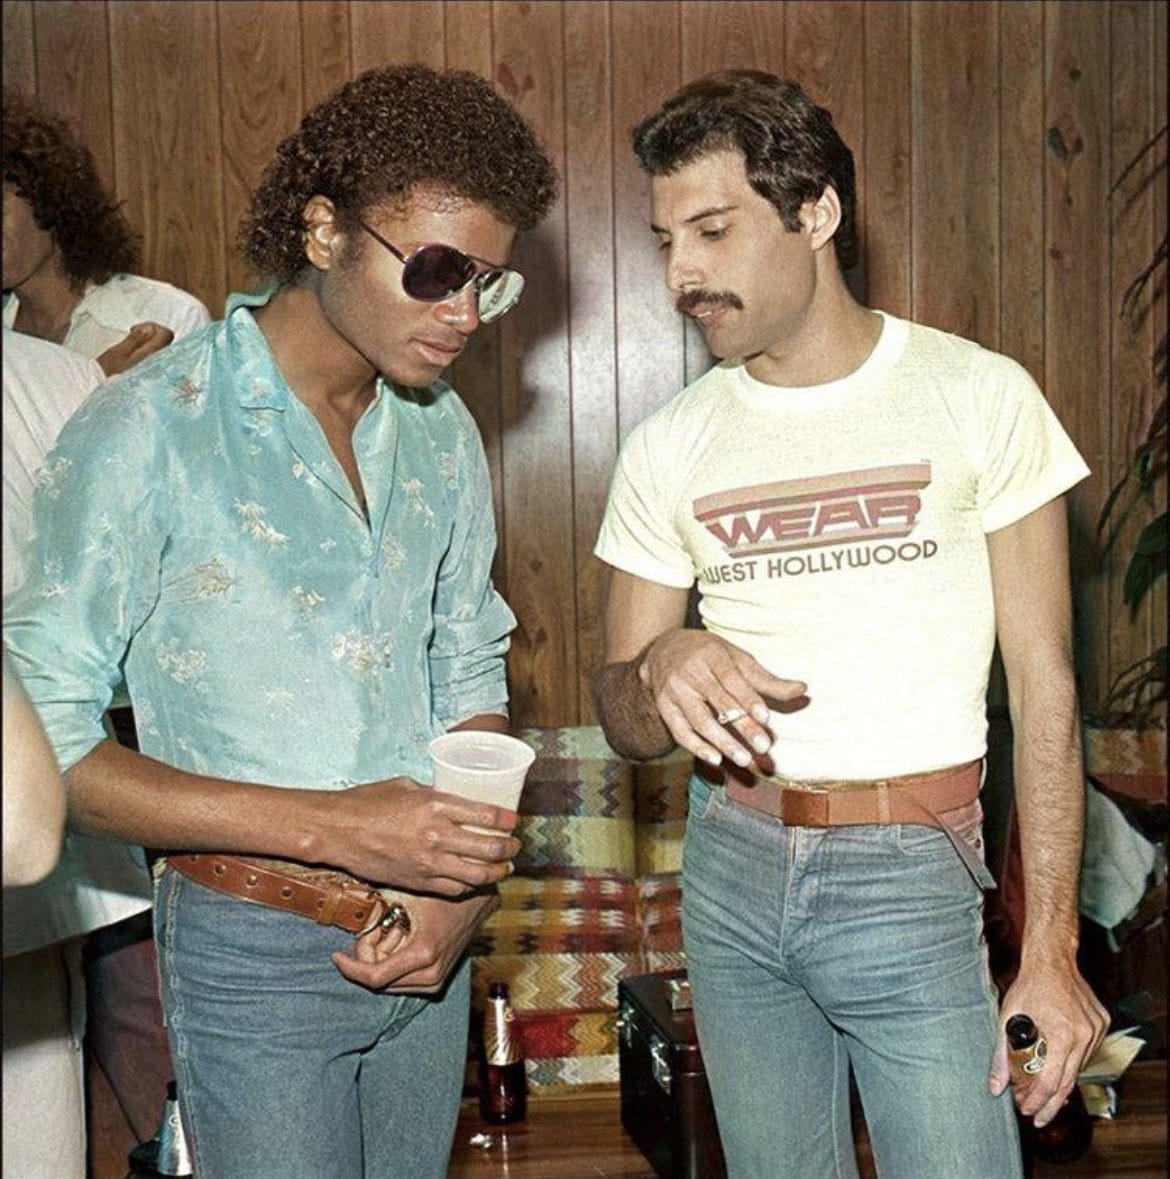 Una fotografía histórica donde aparecen Michael Jackson y Freddie Mercury, 1980s. 👩‍🎤🤘